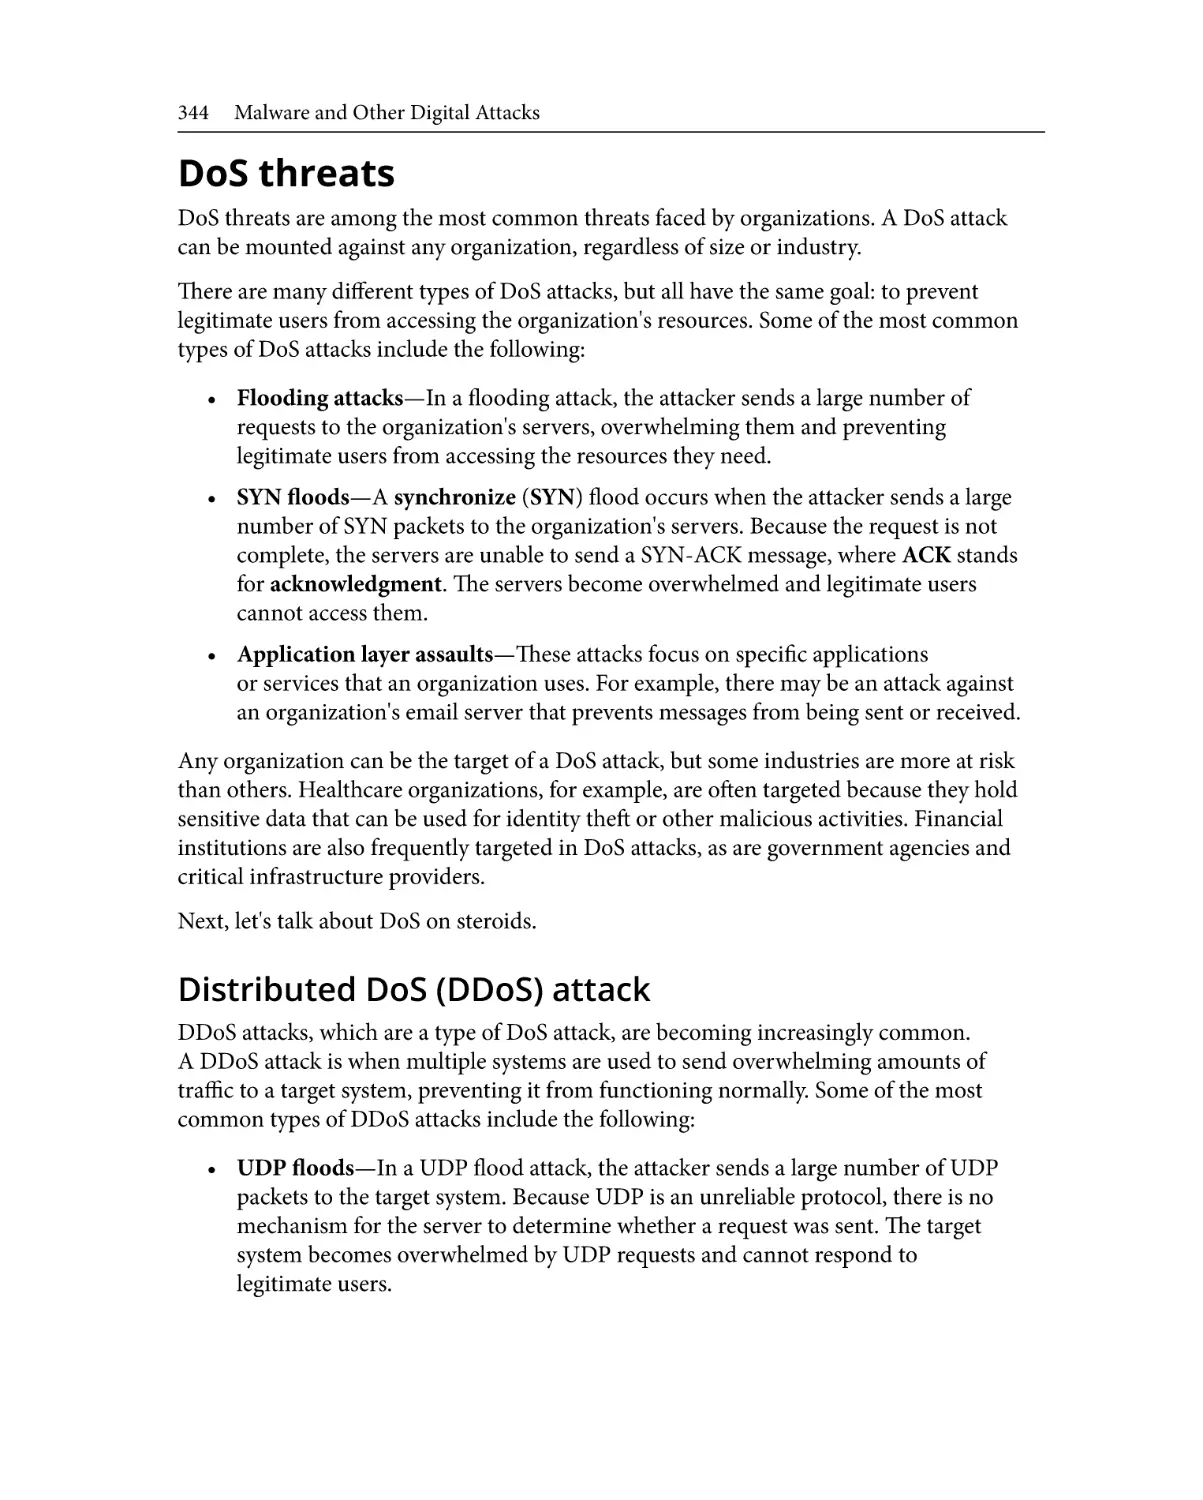 DoS threats
Distributed DoS (DDoS) attack